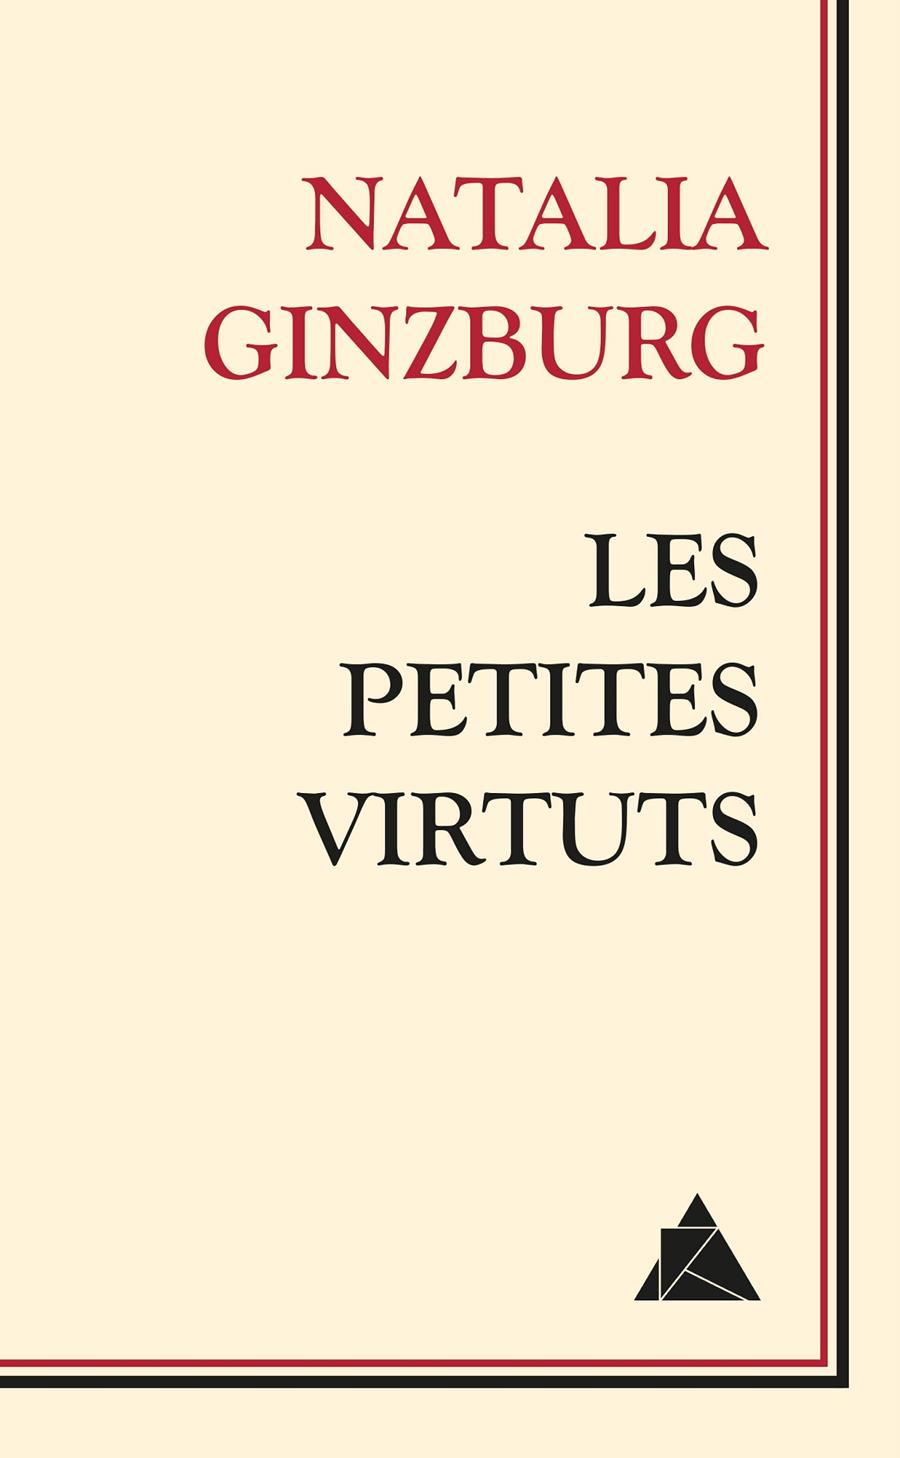 Les petites virtuts | Ginzburg, Natalia